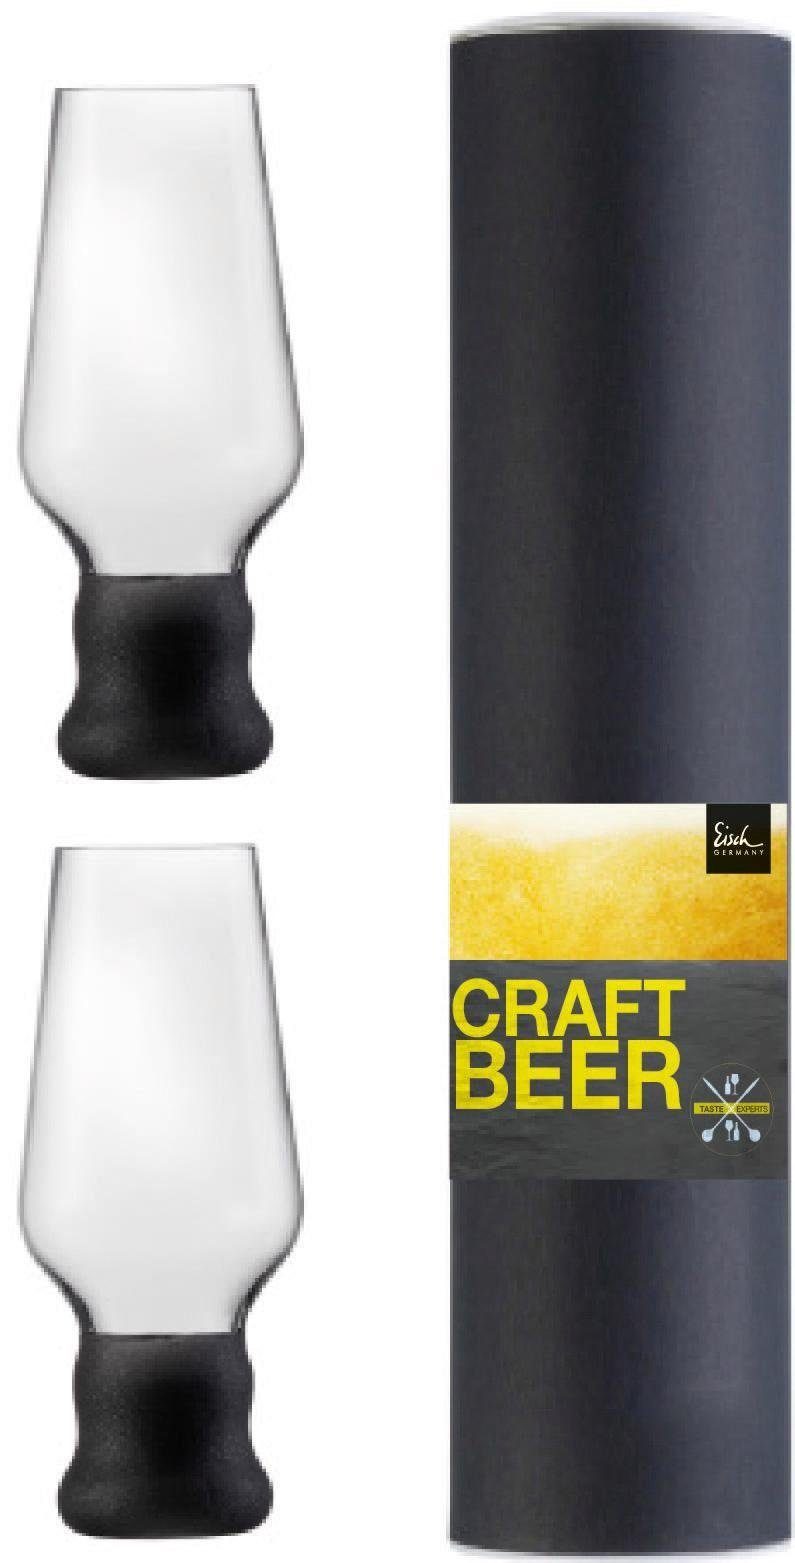 Eisch Bierglas Craft Beer Becher, Kristallglas, bleifrei, 450 ml, 2-teilig